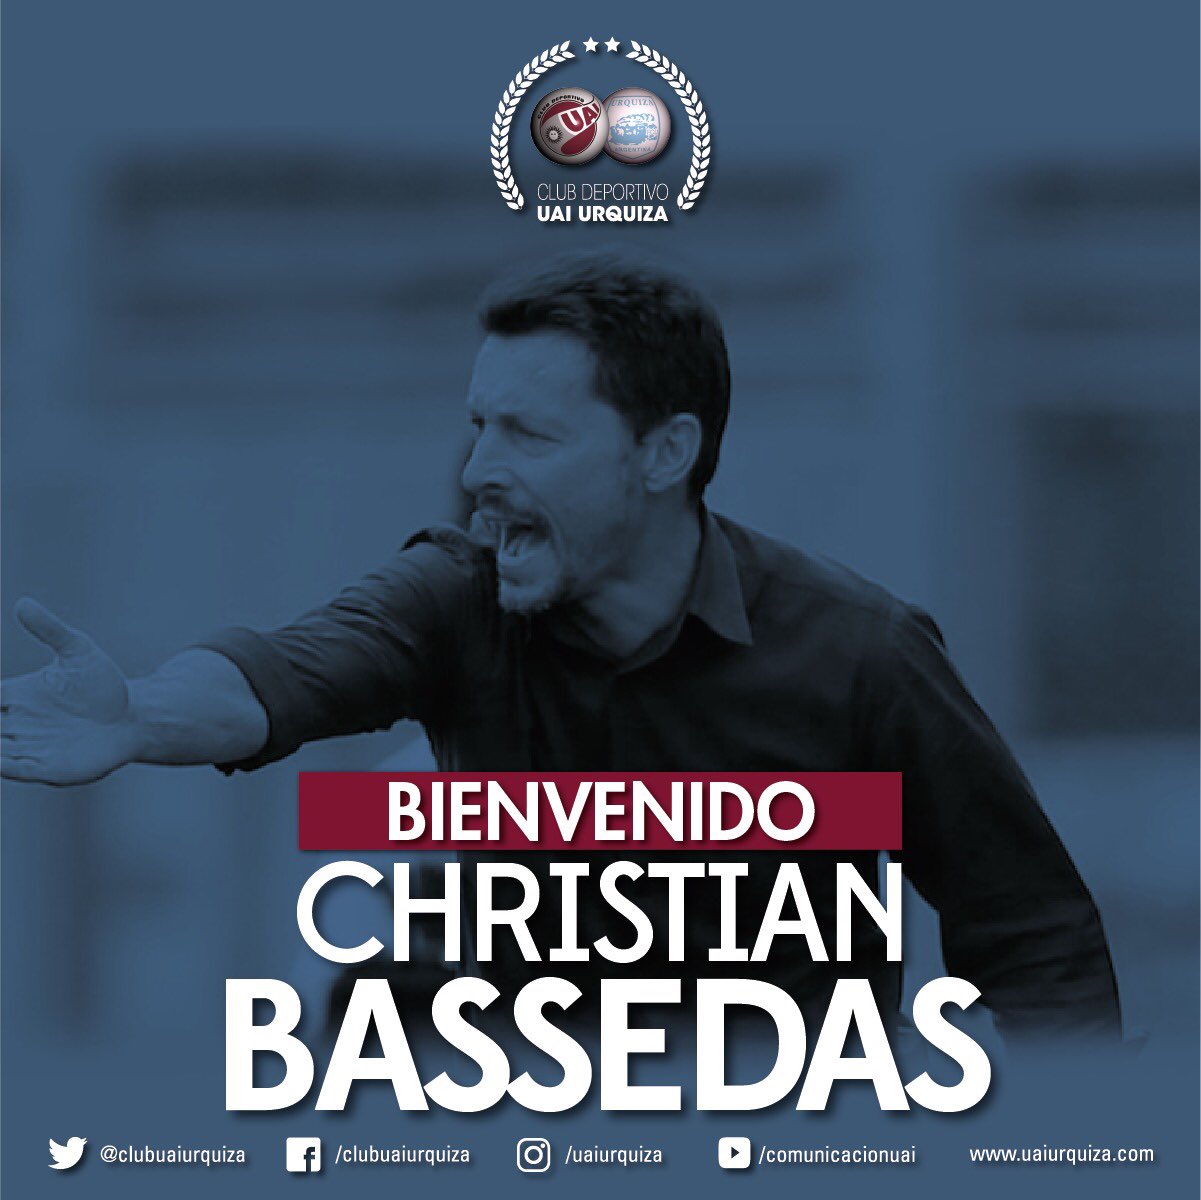 UAI Urquiza on X: 🎙️ COMUNICADO OFICIAL El Club Deportivo UAI Urquiza  anuncia que Christian Bassedas deja de ser el director técnico del plantel  masculino de fútbol. Nuestra institución le agradece todo